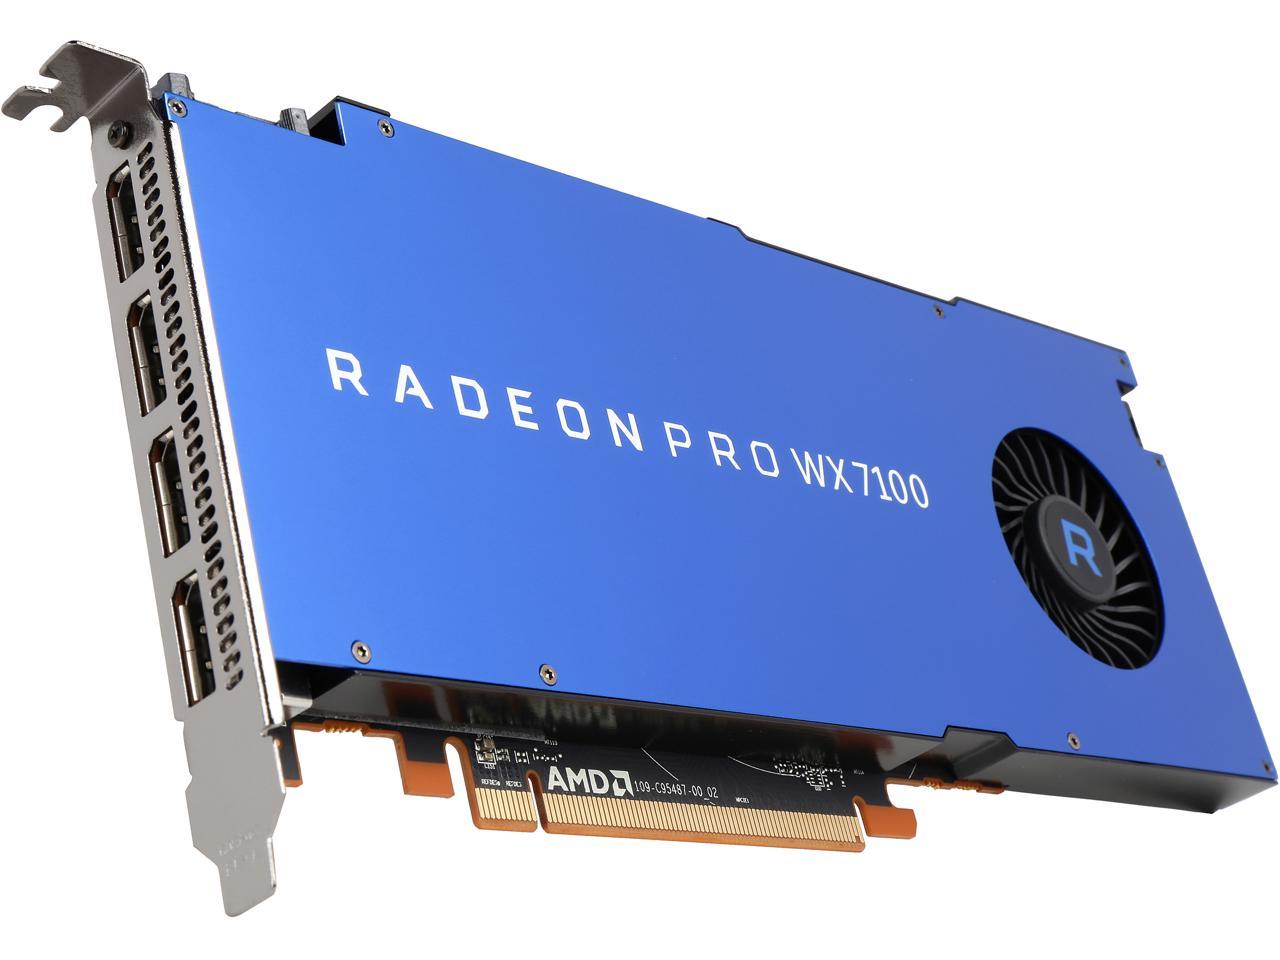 Radeon Pro WX 7100 100-505826 8GB 256-bit GDDR5 Workstation Video Card